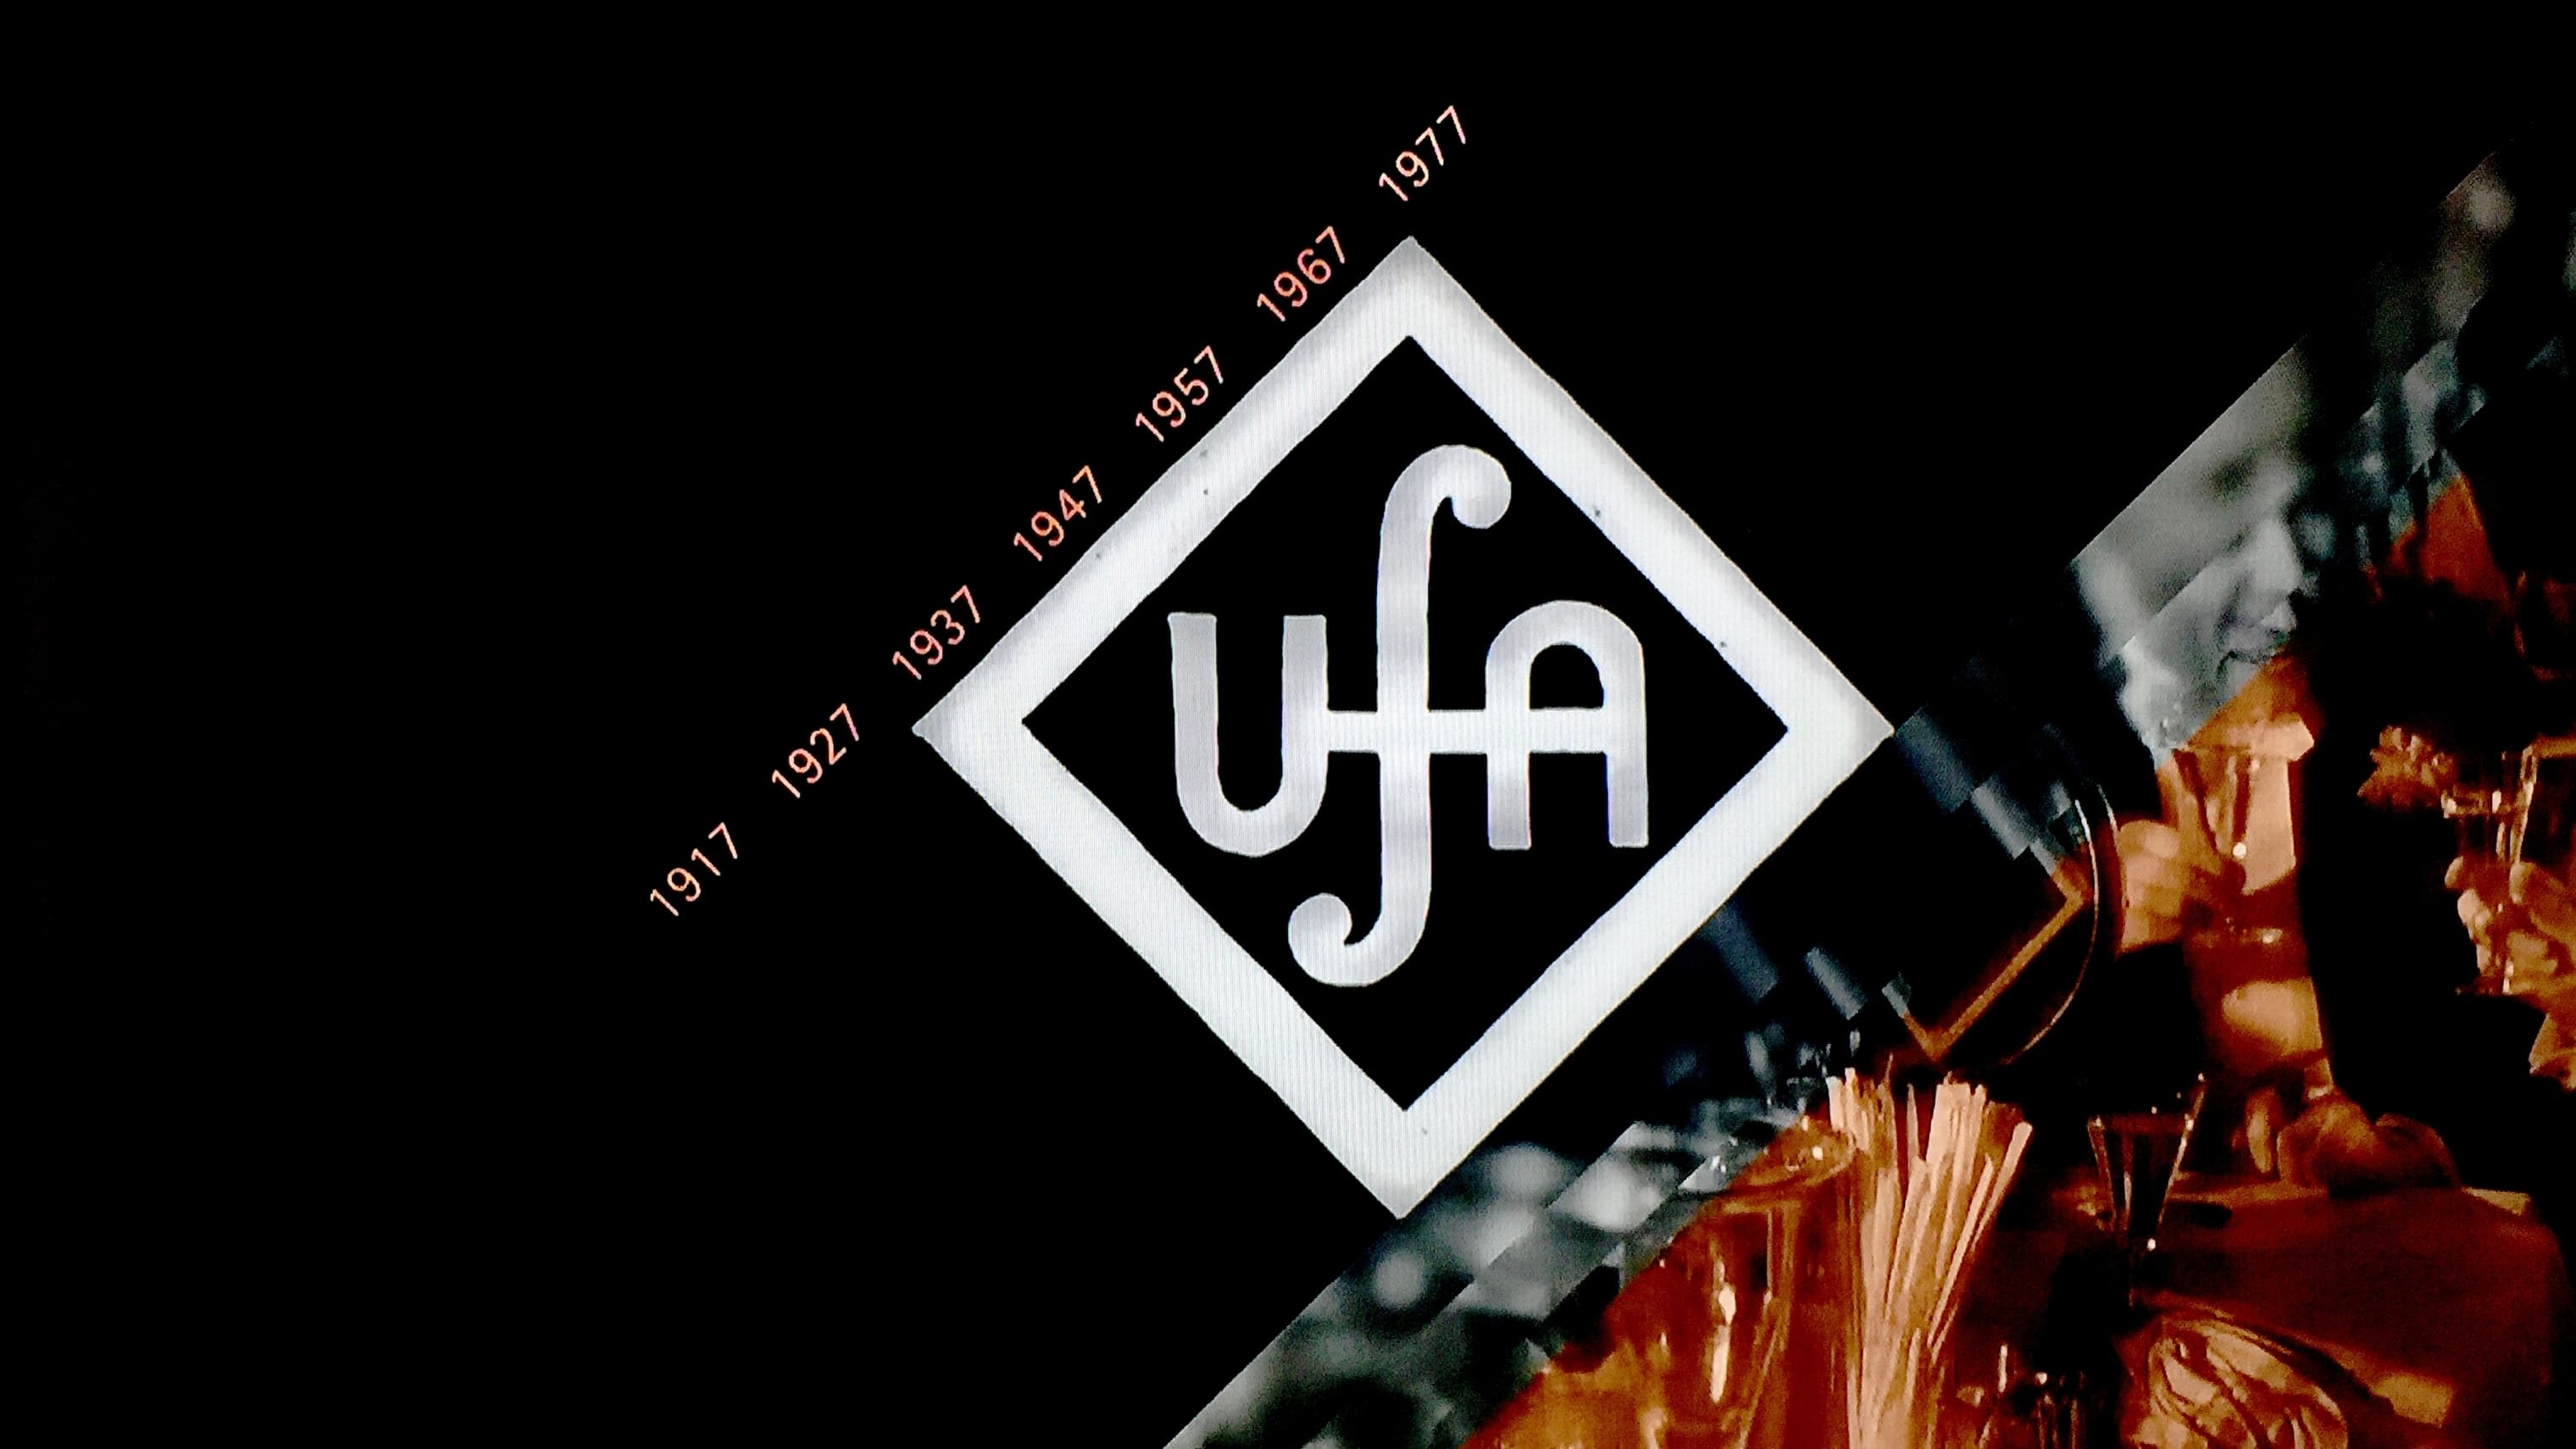 100 Jahre UFA - Im Maschinenraum des deutschen Films (2017)